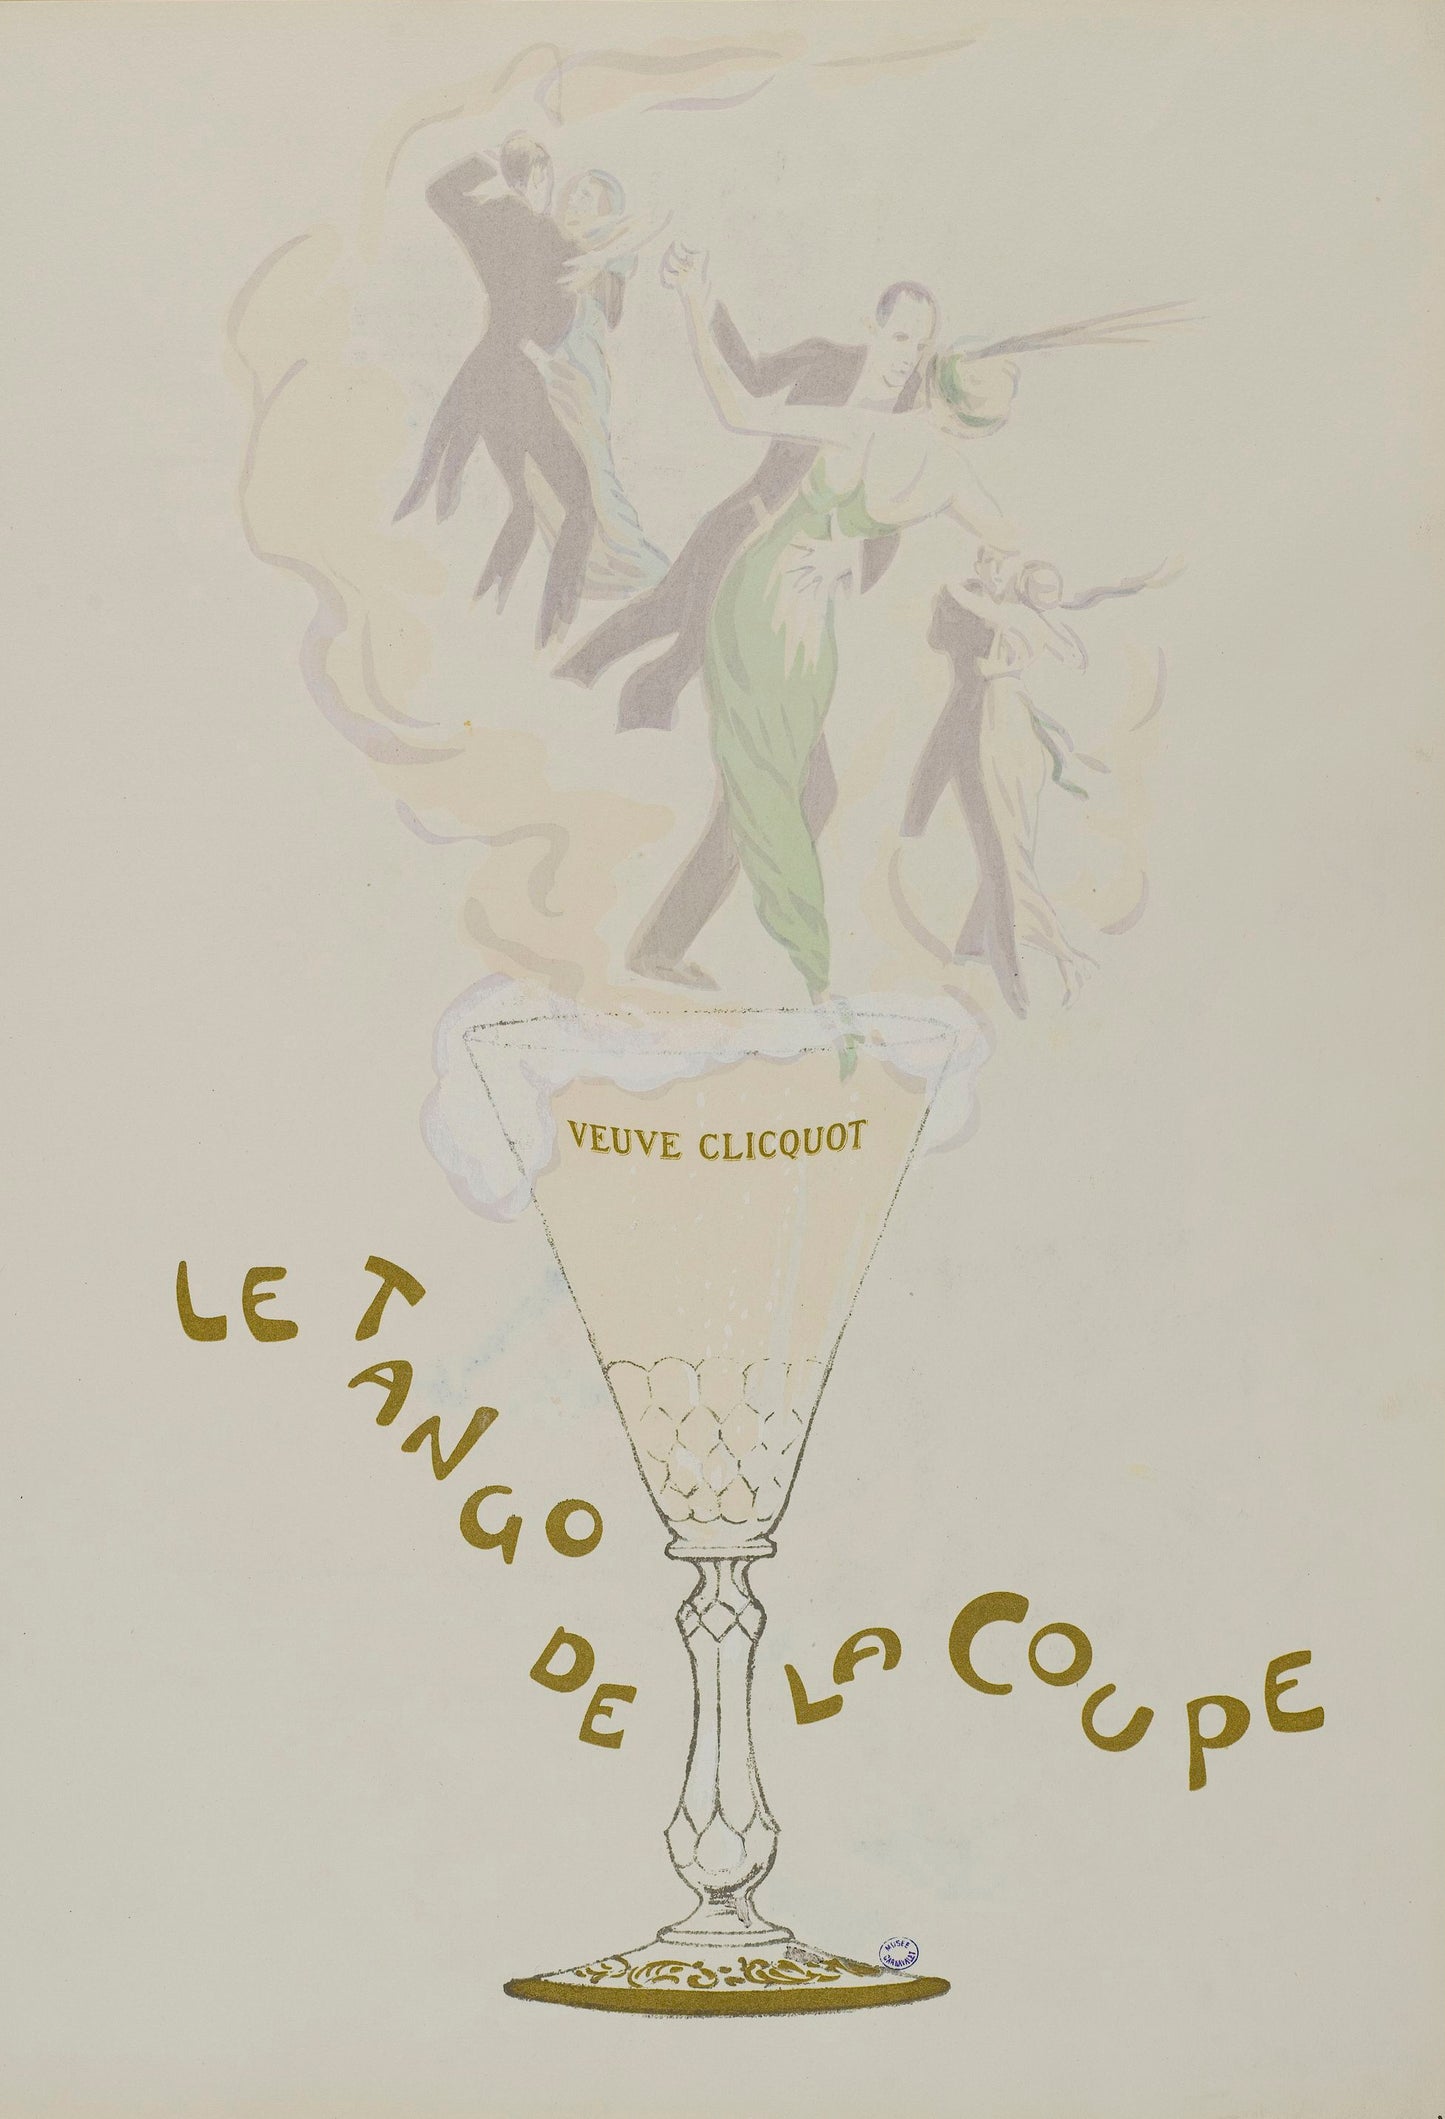 Vintage Veuve Clicquot Champagne poster “Le Tango de la coupe” (1900s) | Georges Goursat Posters, Prints, & Visual Artwork The Trumpet Shop   